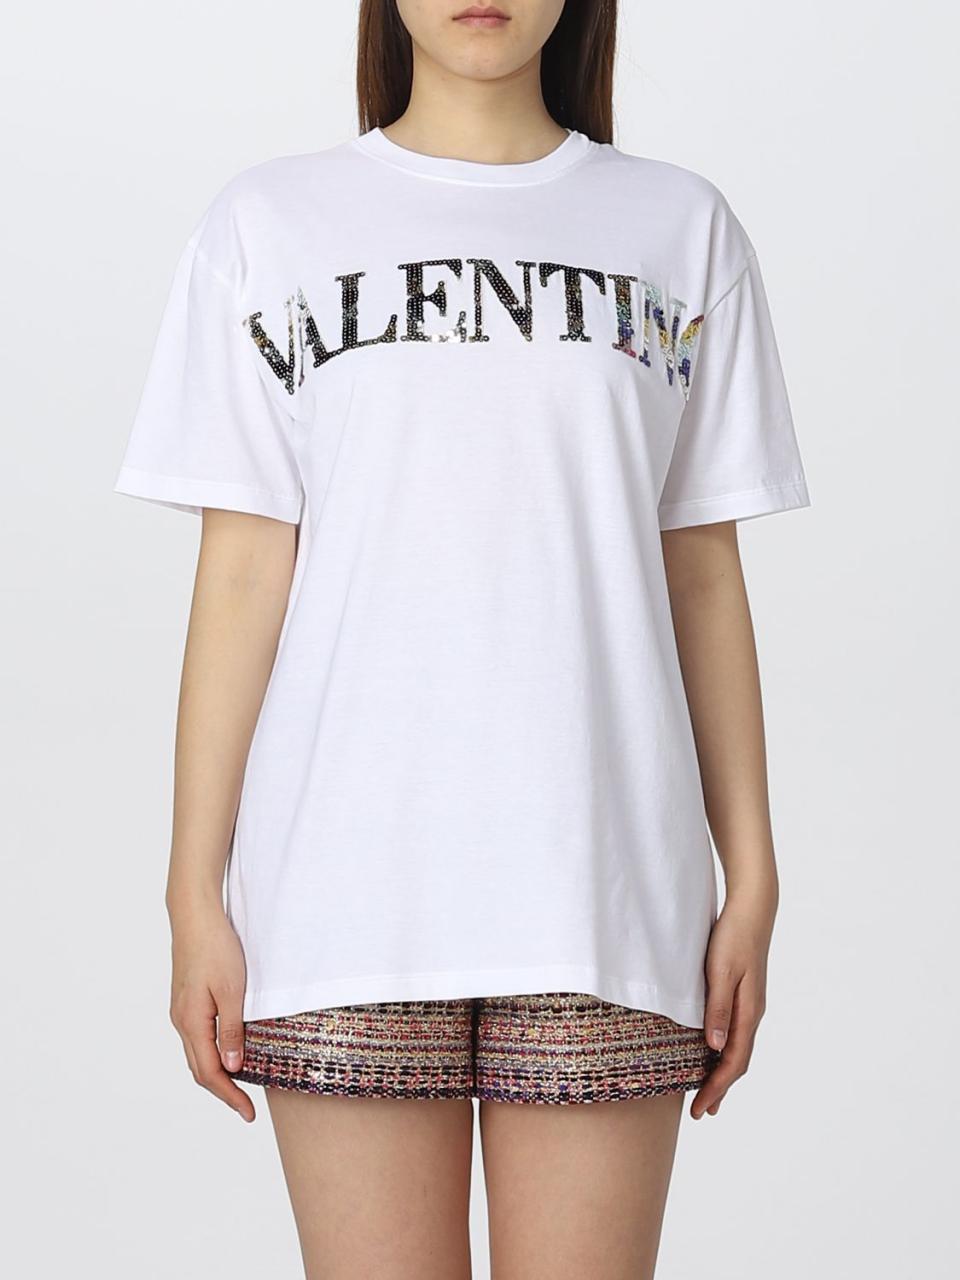 발렌티노(Valentino): 티셔츠 여성 - 화이트 | Giglio.Com에서 발렌티노 티셔츠 2B3Mg20V7T7 상품들을  온라인으로 만나보세요